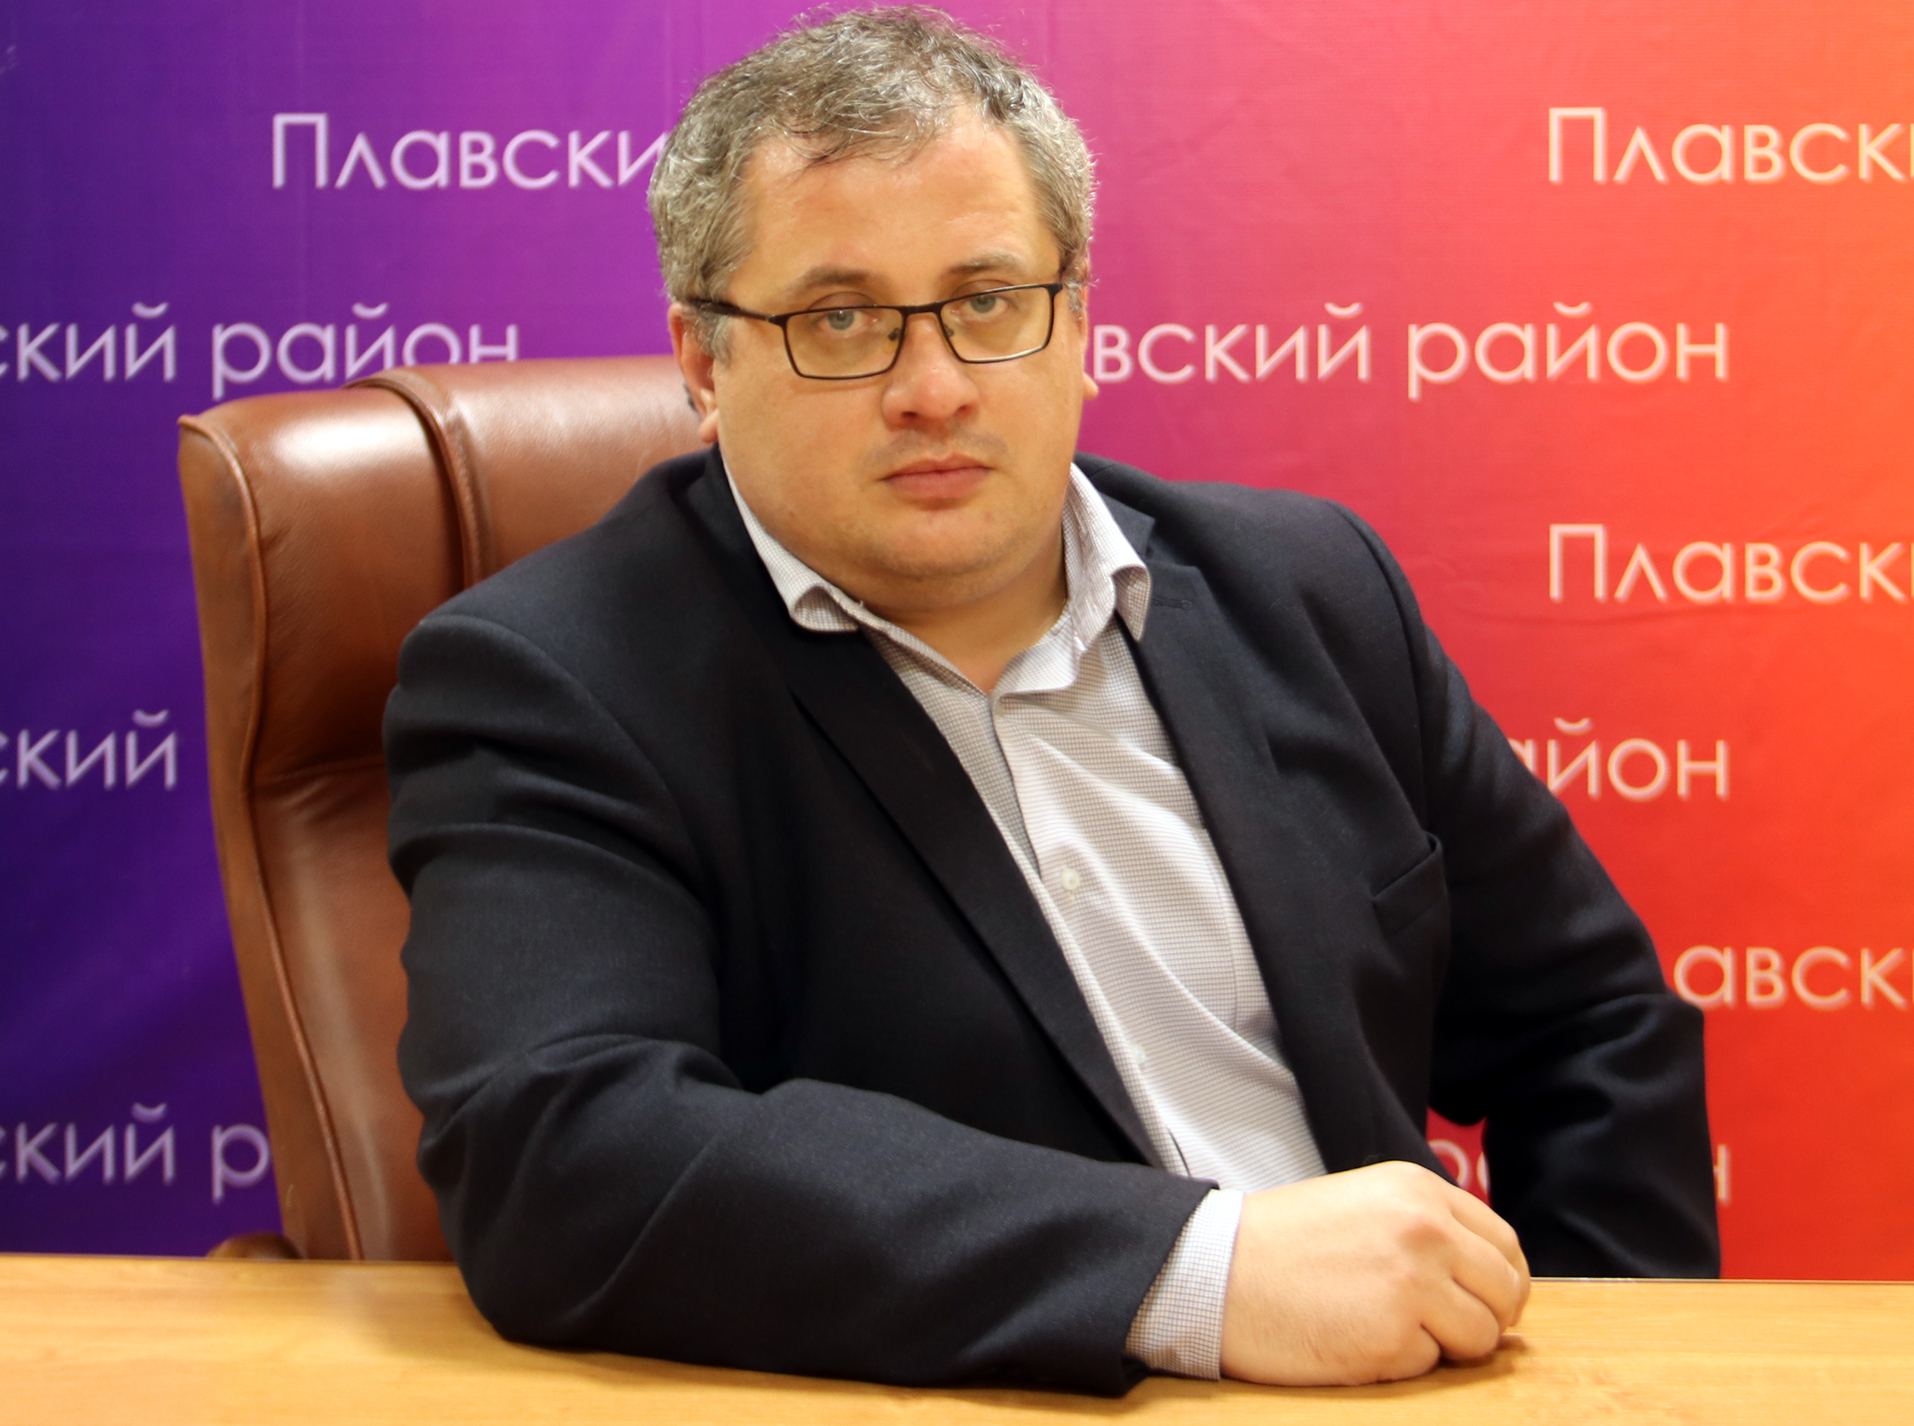 Андрей Гарифзянов: «Сила России - в единстве и верности Отечеству!»